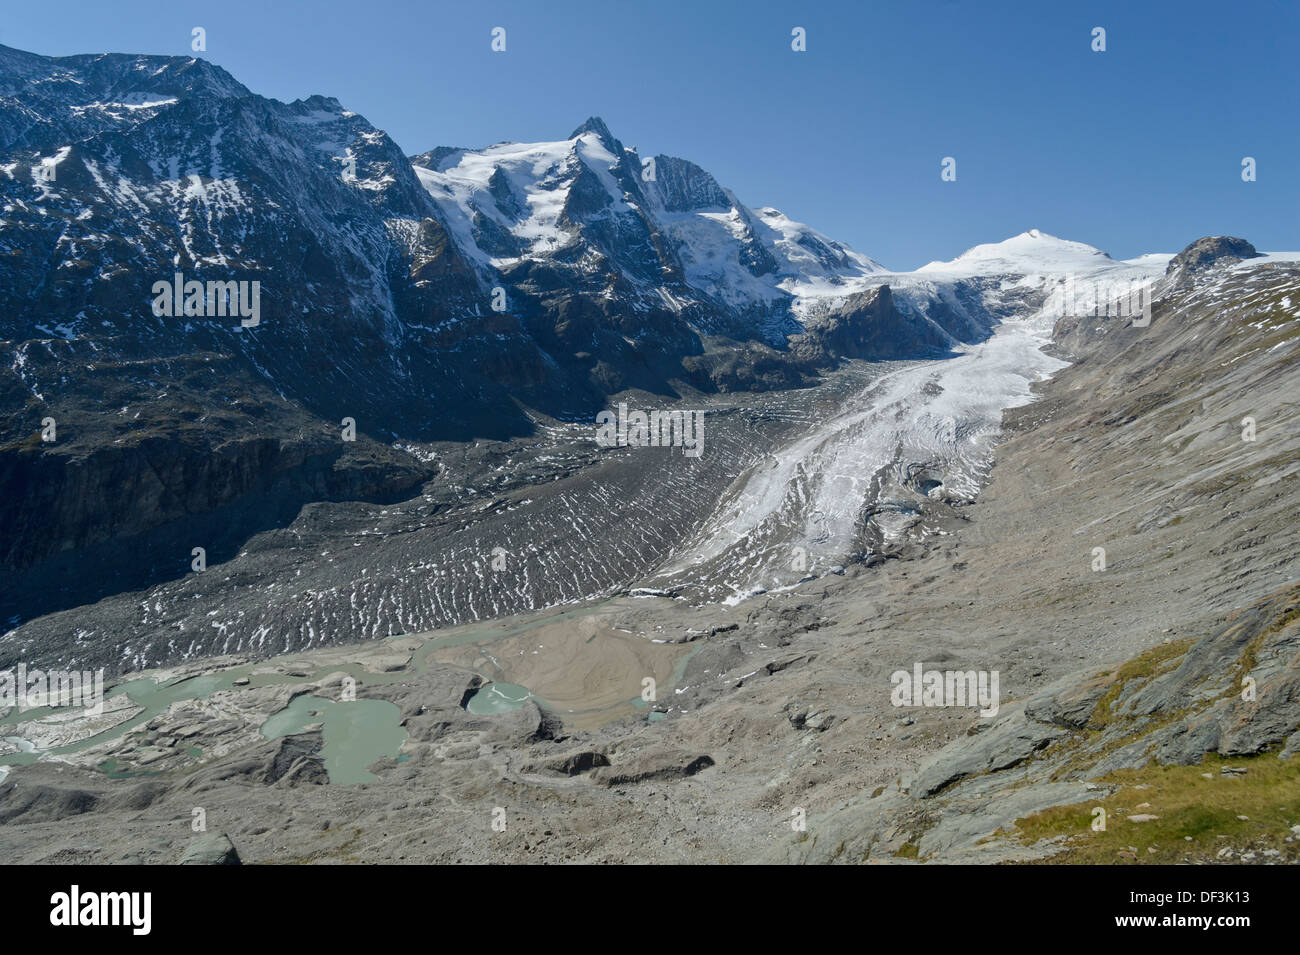 Austria / Hohe Tauern National Park - Impatti del cambiamento climatico: Fusione del ghiacciaio. Ghiacciaio Pasterze sotto il monte Grossglockner. Foto Stock